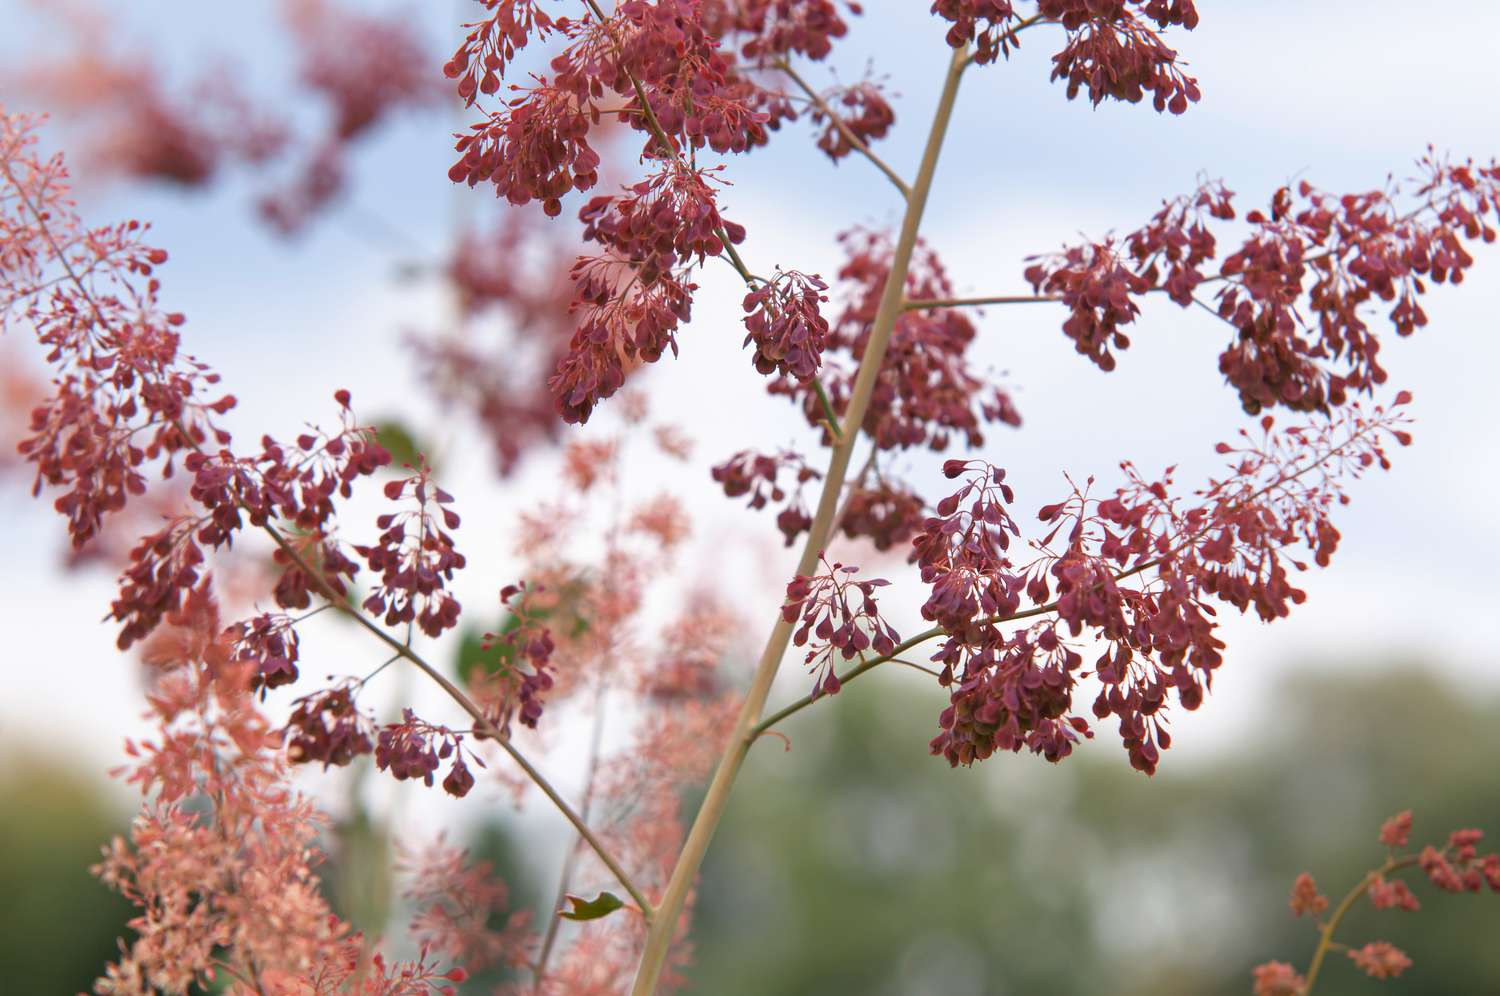 Klatschmohnstängel in Nahaufnahme mit roten und hellrosa Blüten in Nahaufnahme